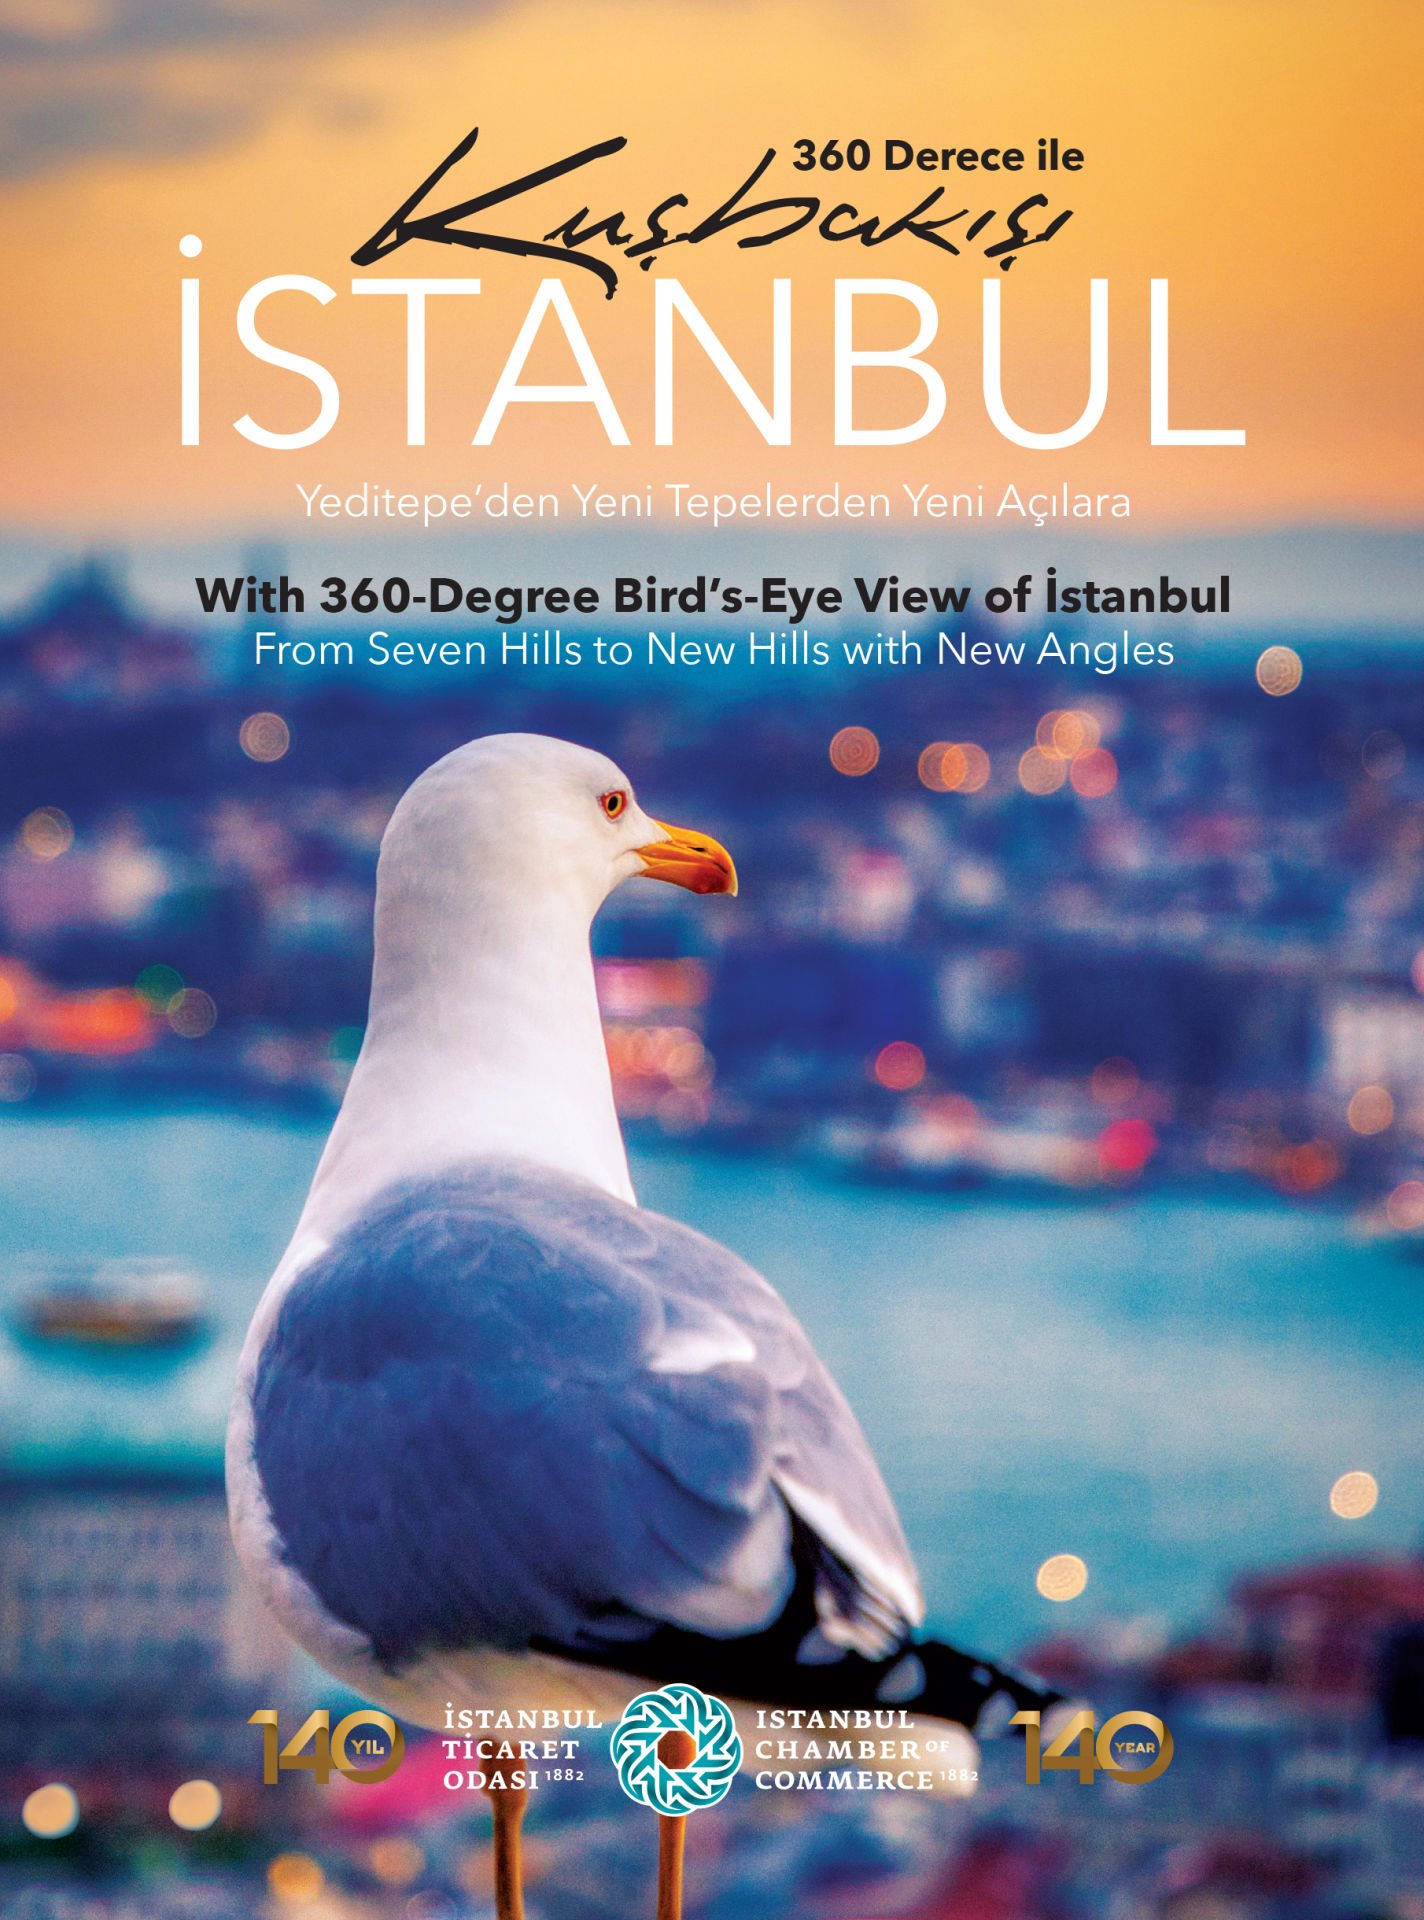 360 Derece ile Kuşbakışı İstanbul Yeditepe'den Yeni Tepelere Yeni Açılara